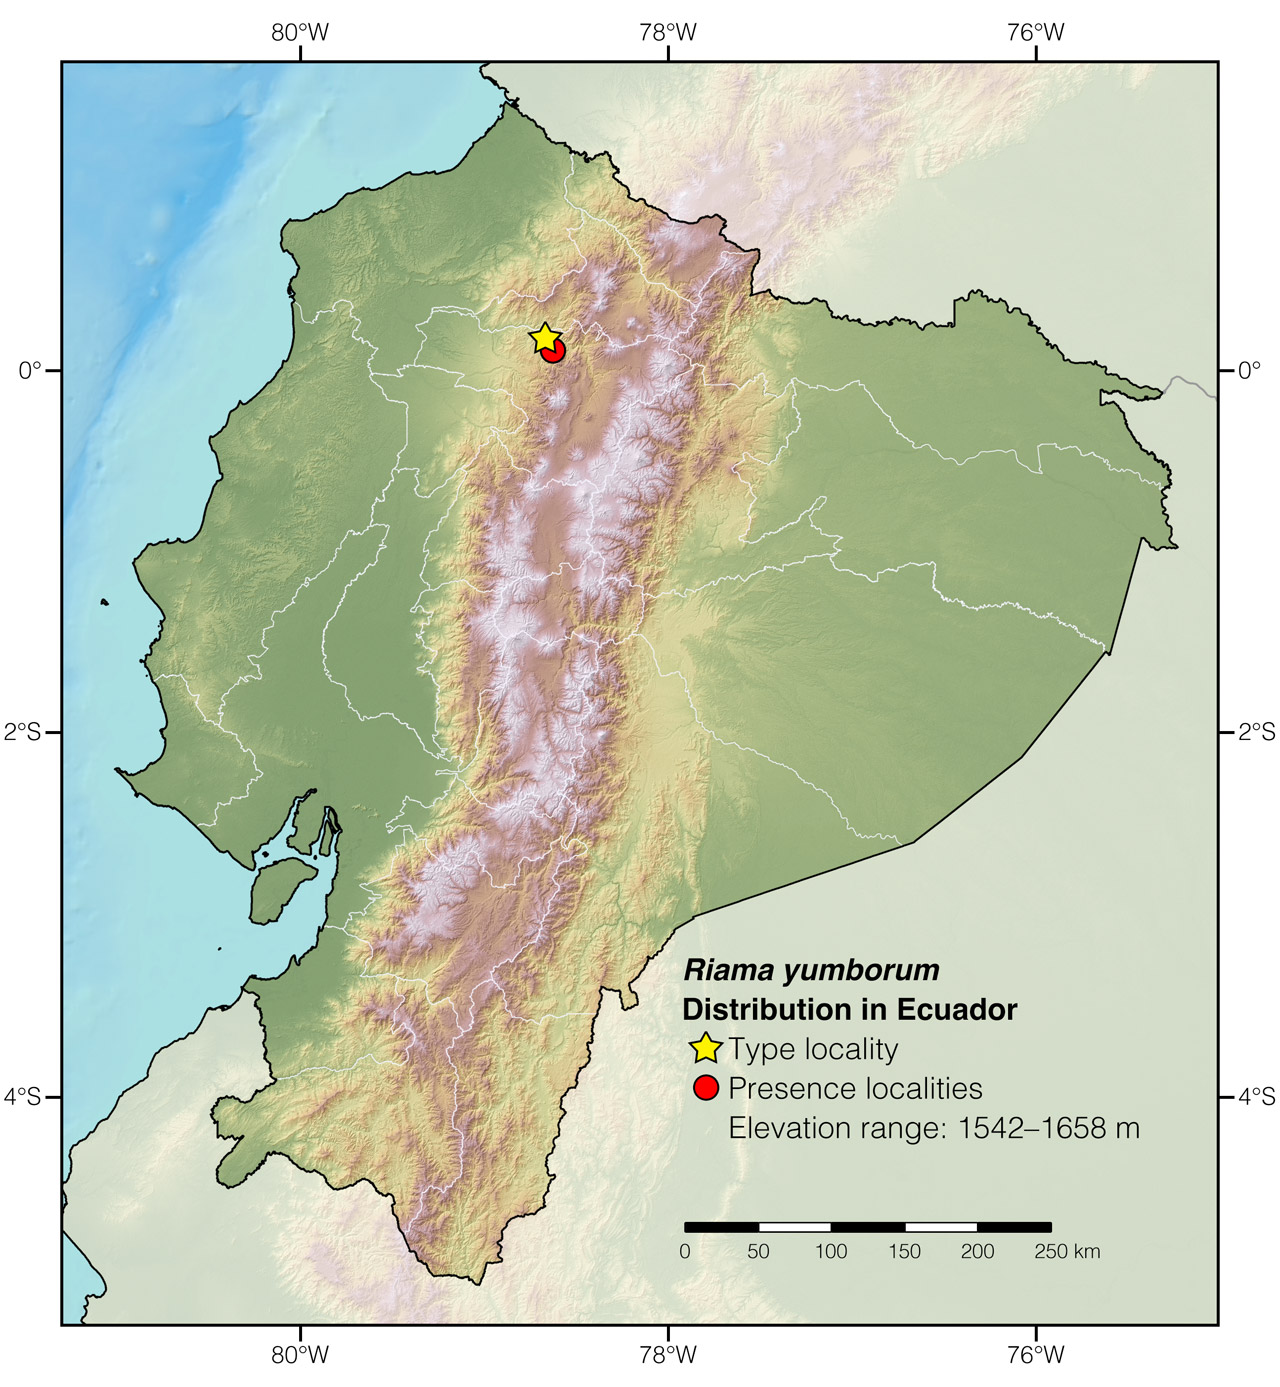 Distribution of Riama yumborum in Ecuador